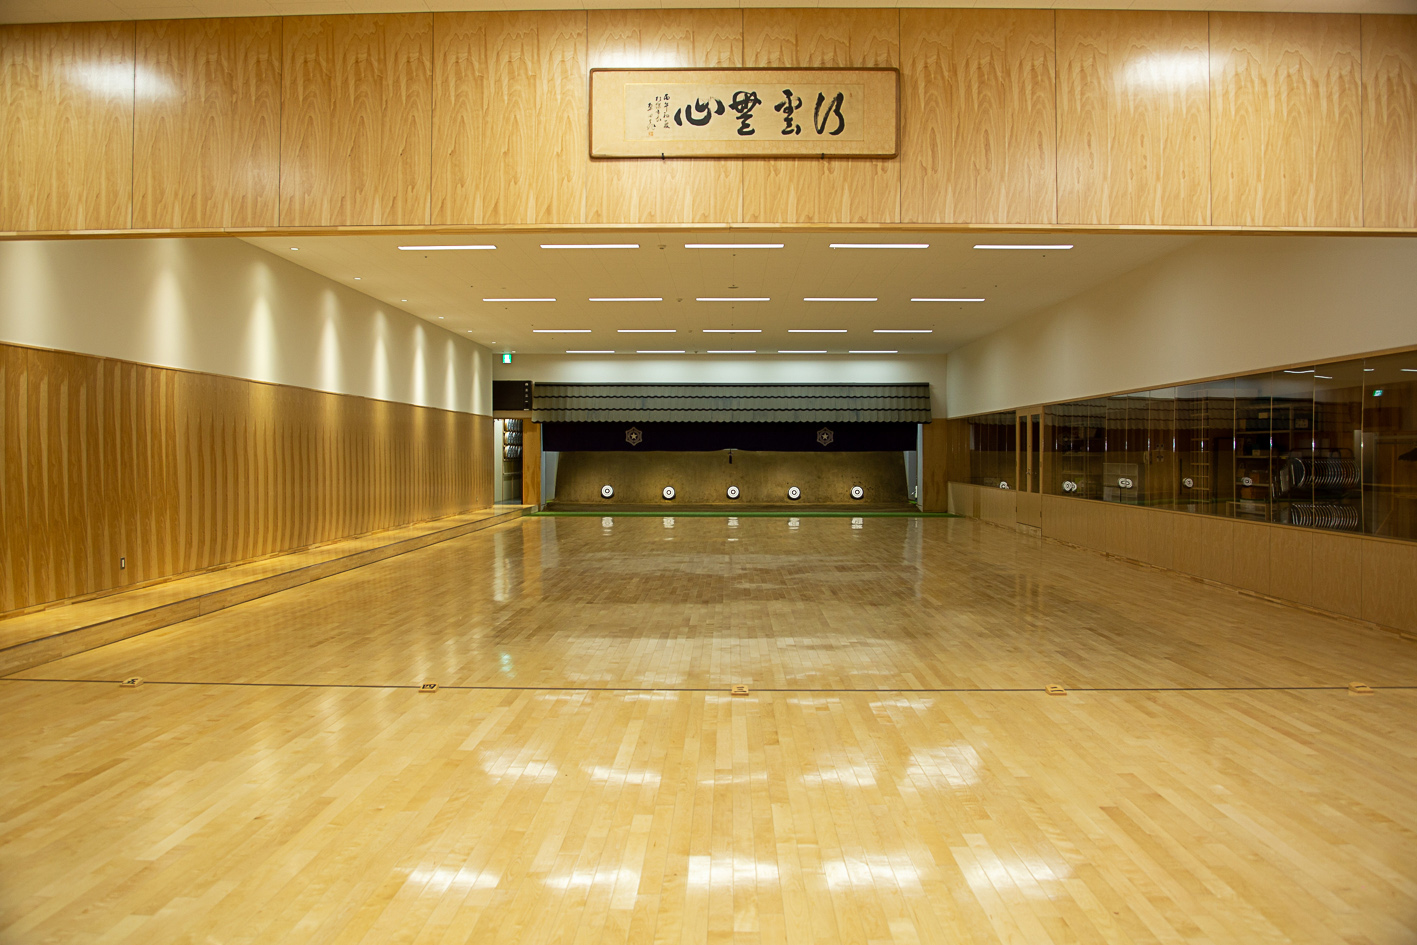 札幌で唯一常設の「土俵」が設置されている。ジムやウエイトリフティング、弓道、ボクシング、柔道・剣道・空手の武道場といった多様な専用スペースを備える。災害時には３つの武道場をつなげて避難所として活用できる。